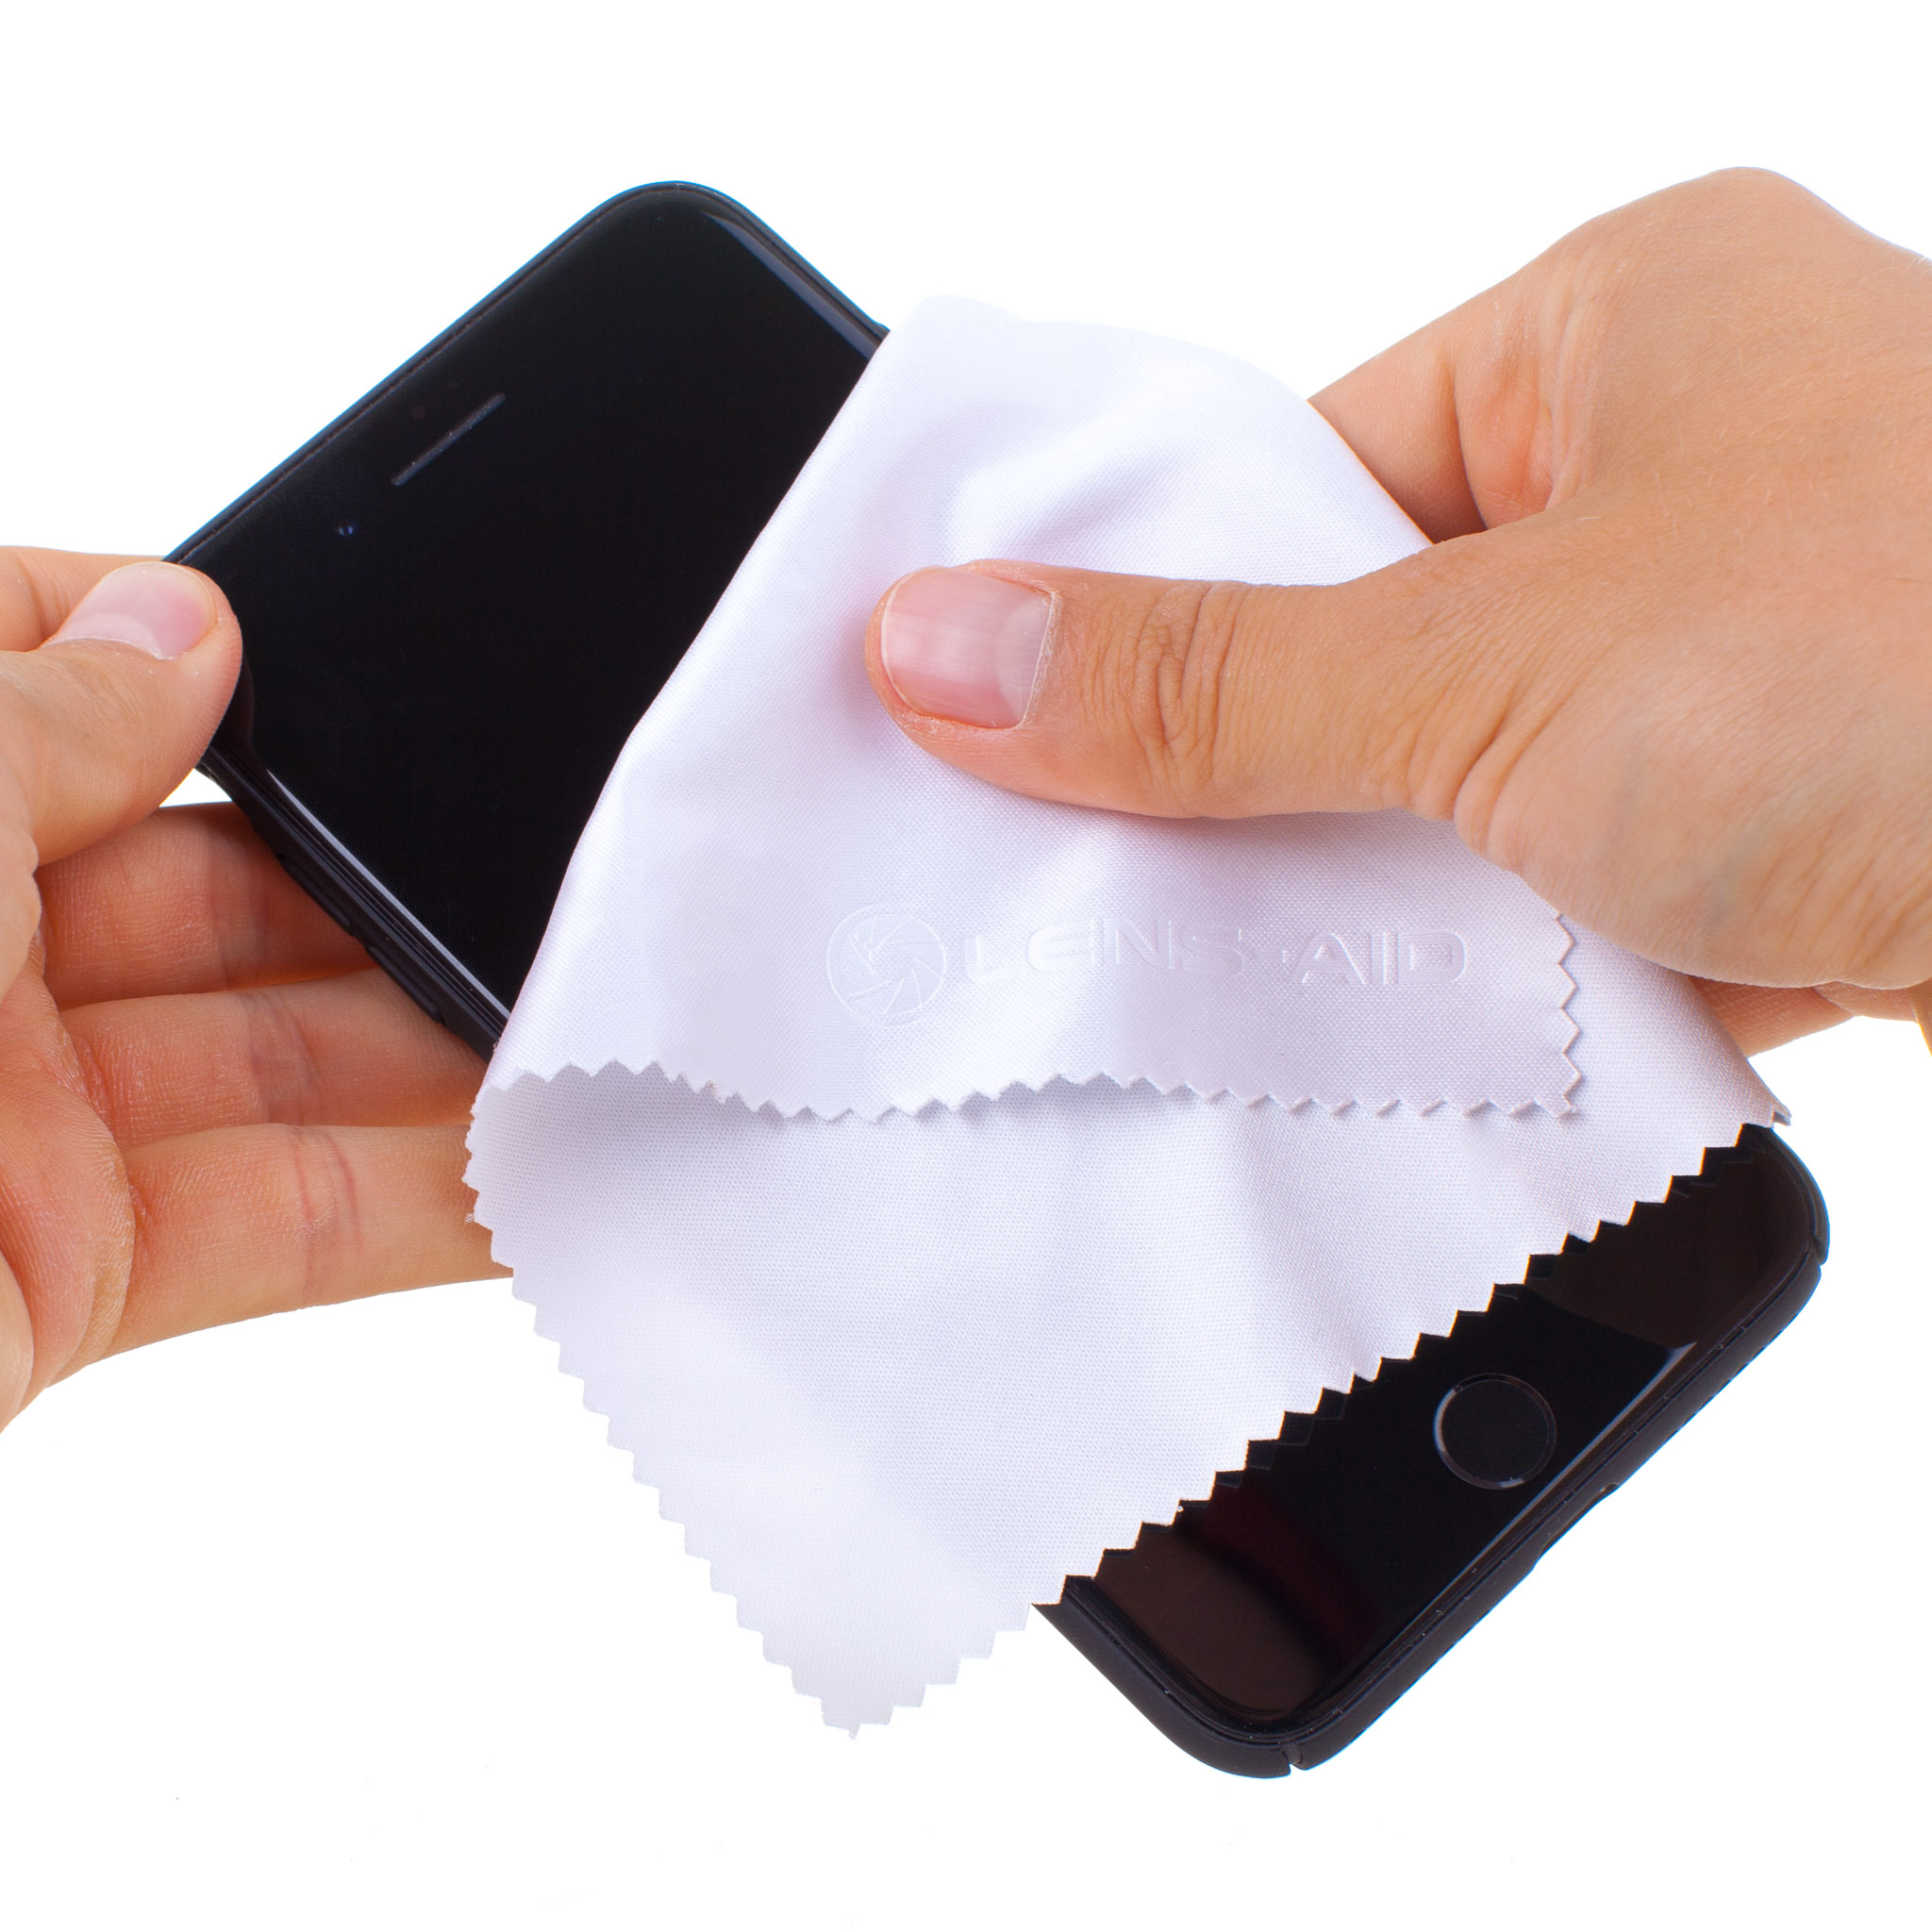 LENS-AID Smartphone Objektiv, Blau/Weiß, 10er & passend Reinigungstuch, Brille für Mikrofaser-Reinigungstücher, Set